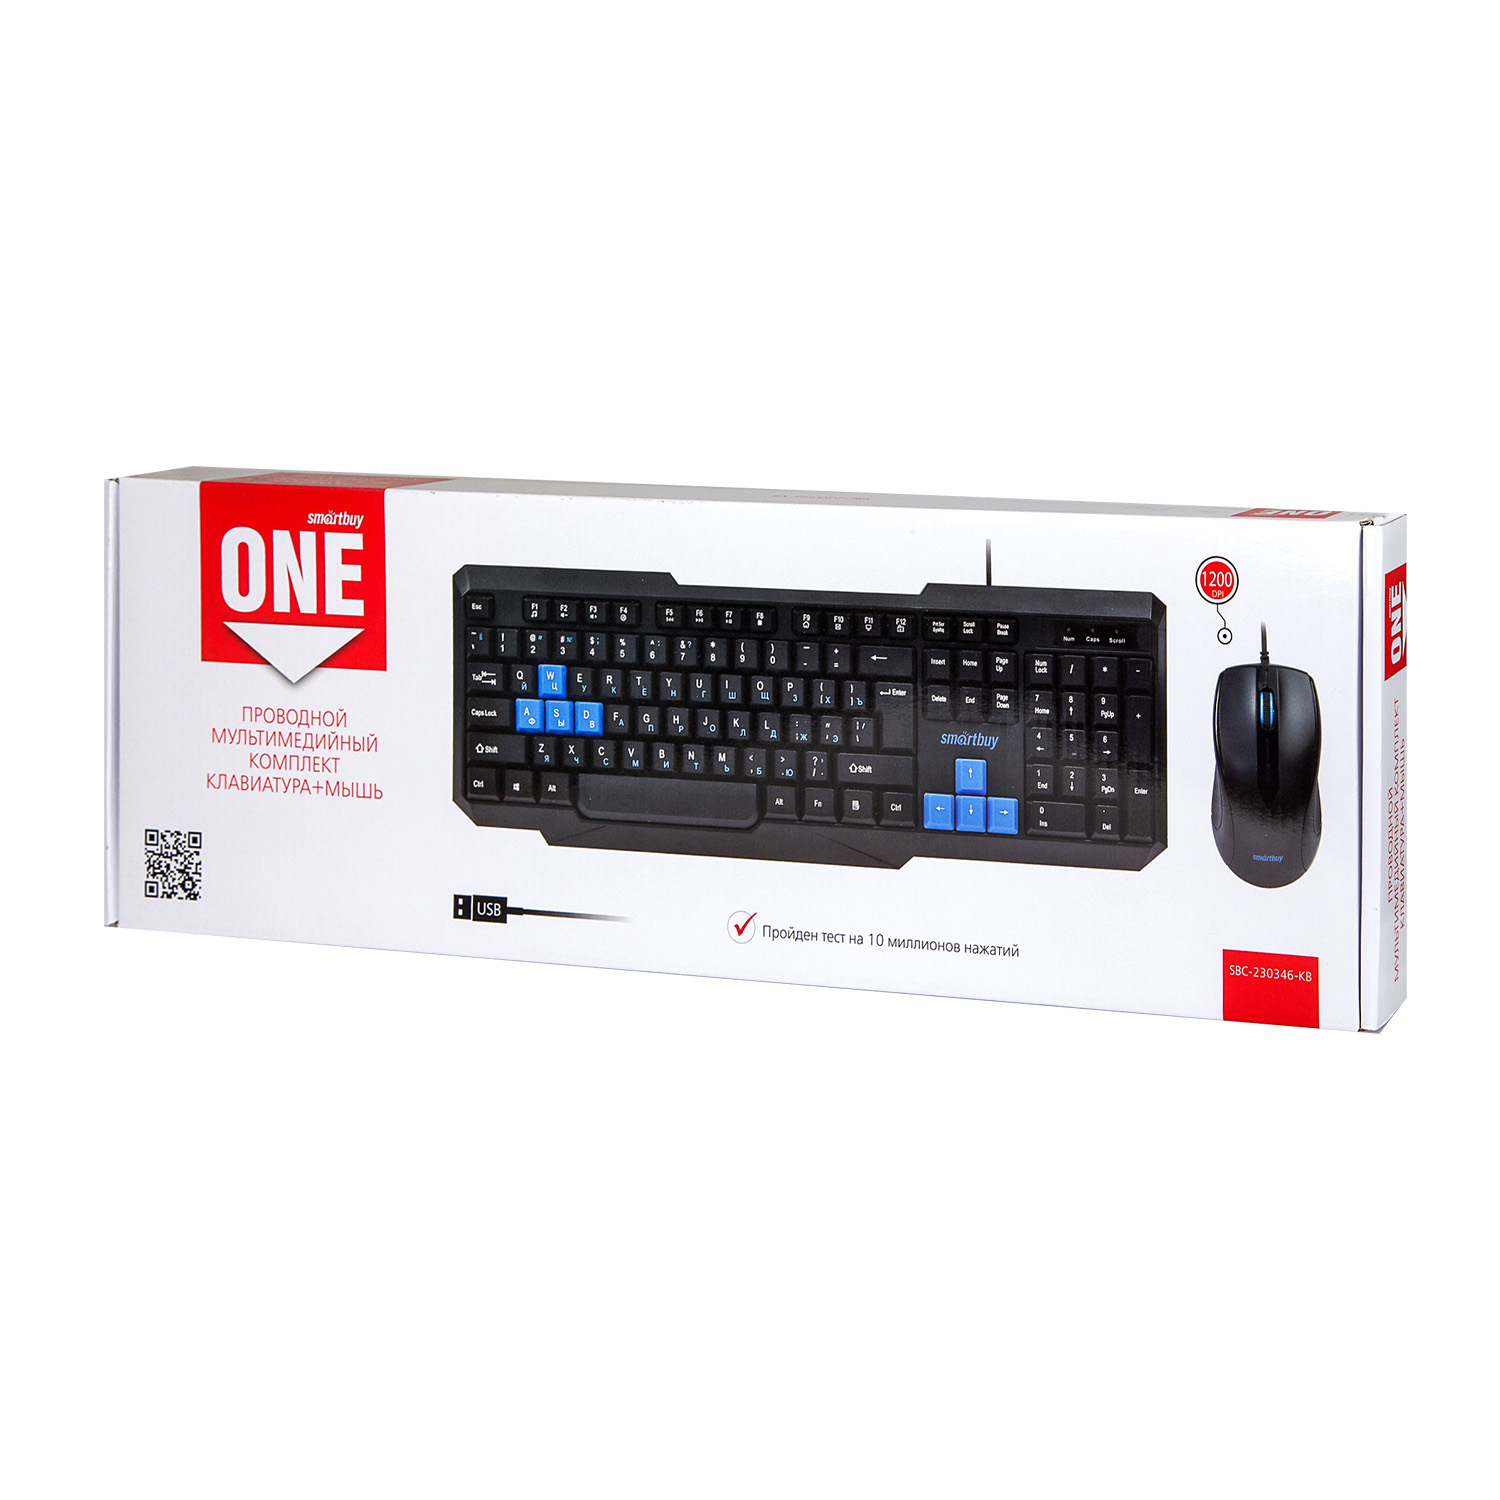 Мультимедийный комплект клавиатура+мышь Smartbuy ONE черно-синий (SBC-230346-KB) /20